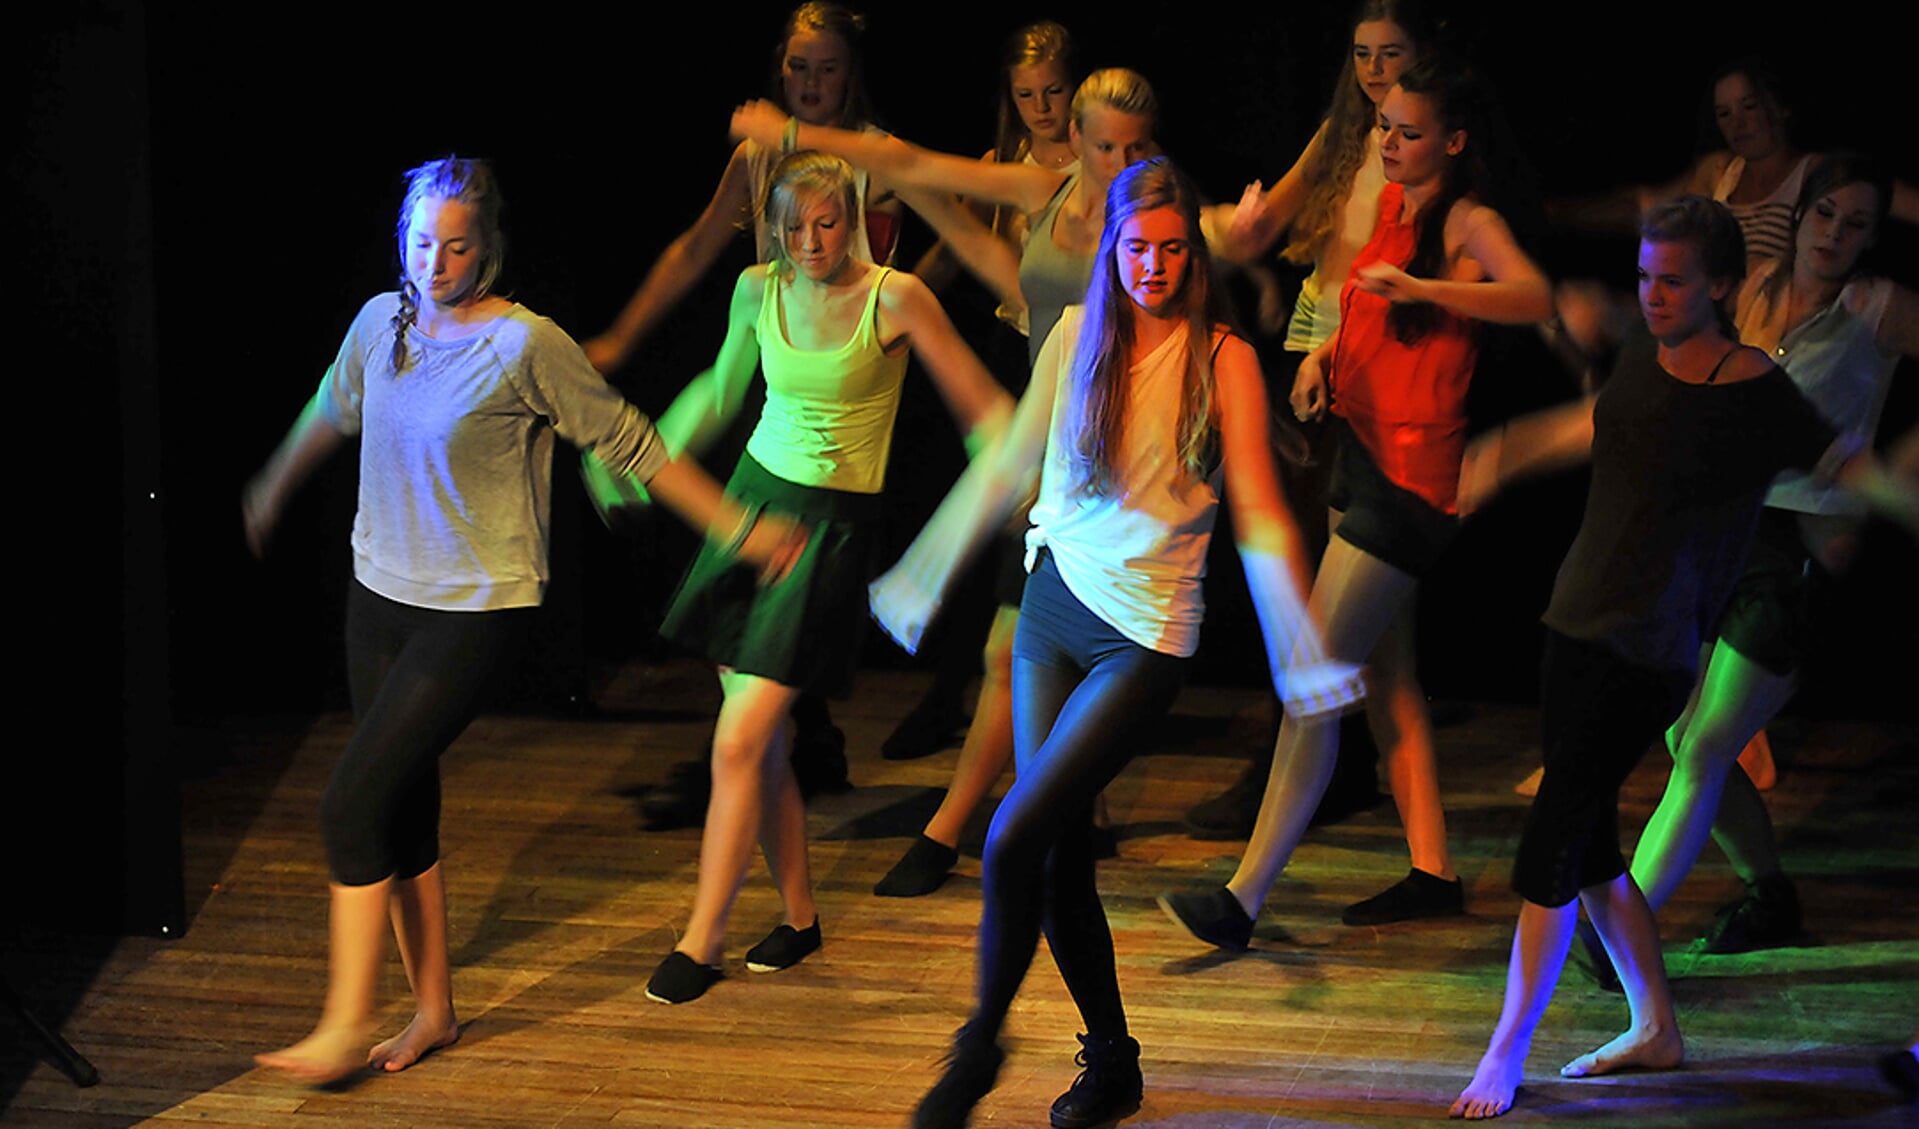 Texelse jongeren tijdens een dansvoorstelling van Artex.